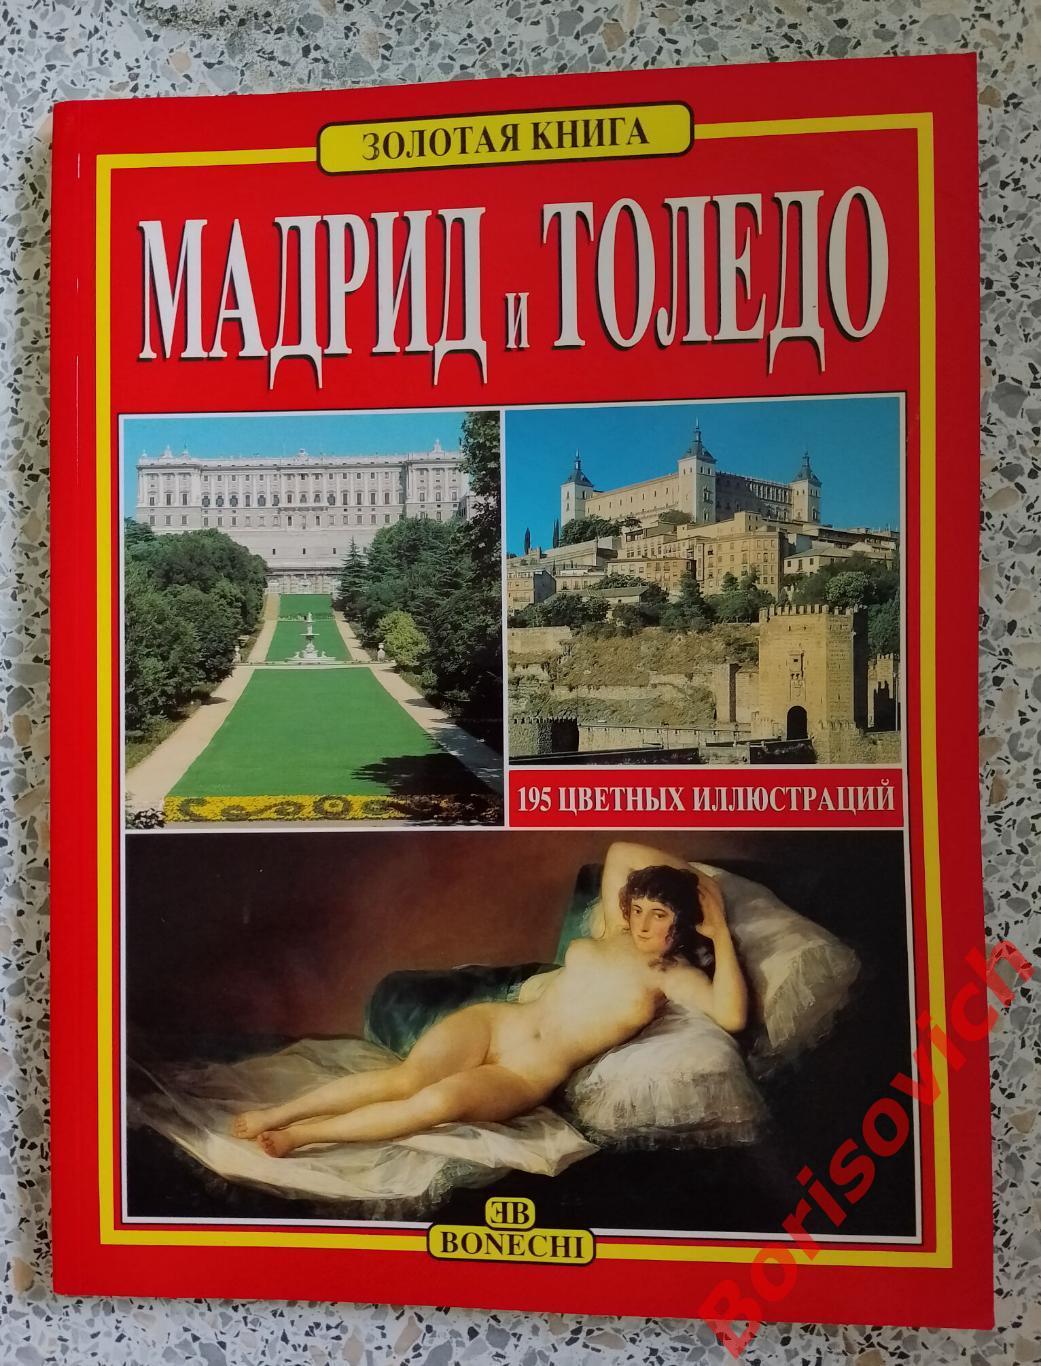 МАДРИД И ТОЛЕДО ИСПАНИЯ Золотая книга Русский язык